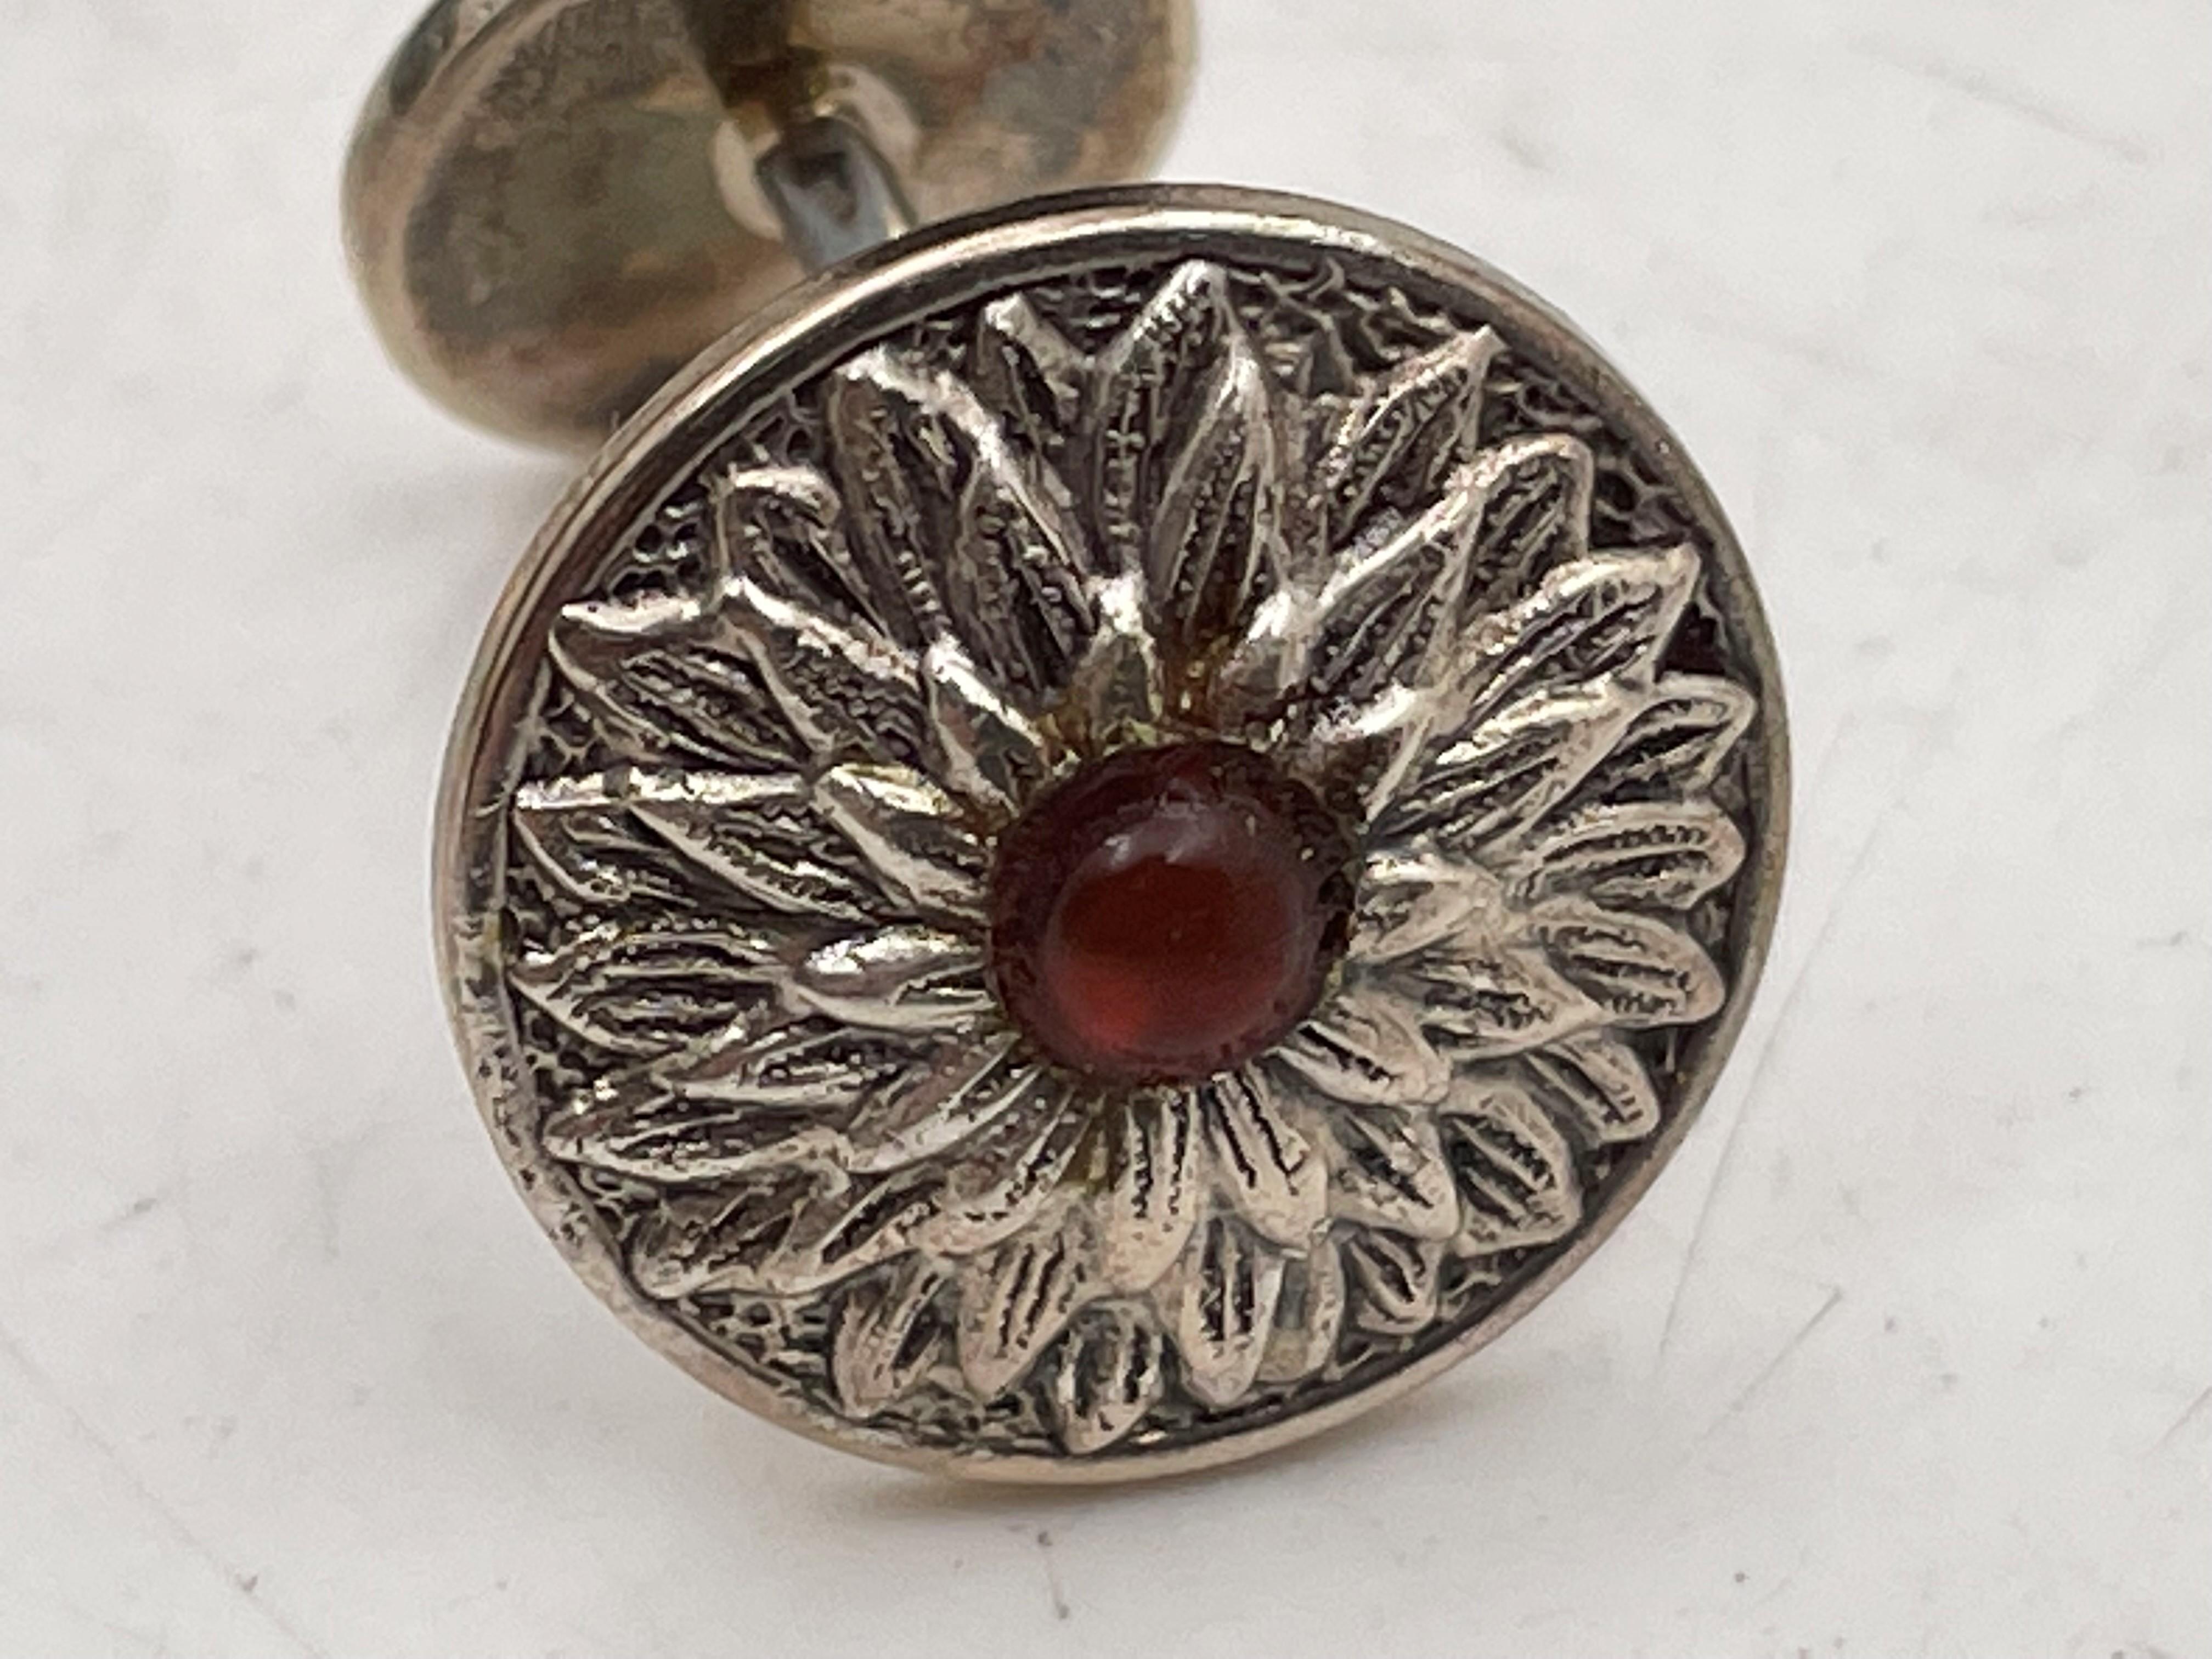 Gianmaria Buccellati, Italie, paire de boutons de manchette en argent sterling, en forme de tournesol, avec une pierre rouge au centre, dans un beau motif floral, mesurant 2/3'' de diamètre, et portant des poinçons. Vendu dans sa boîte d'origine,